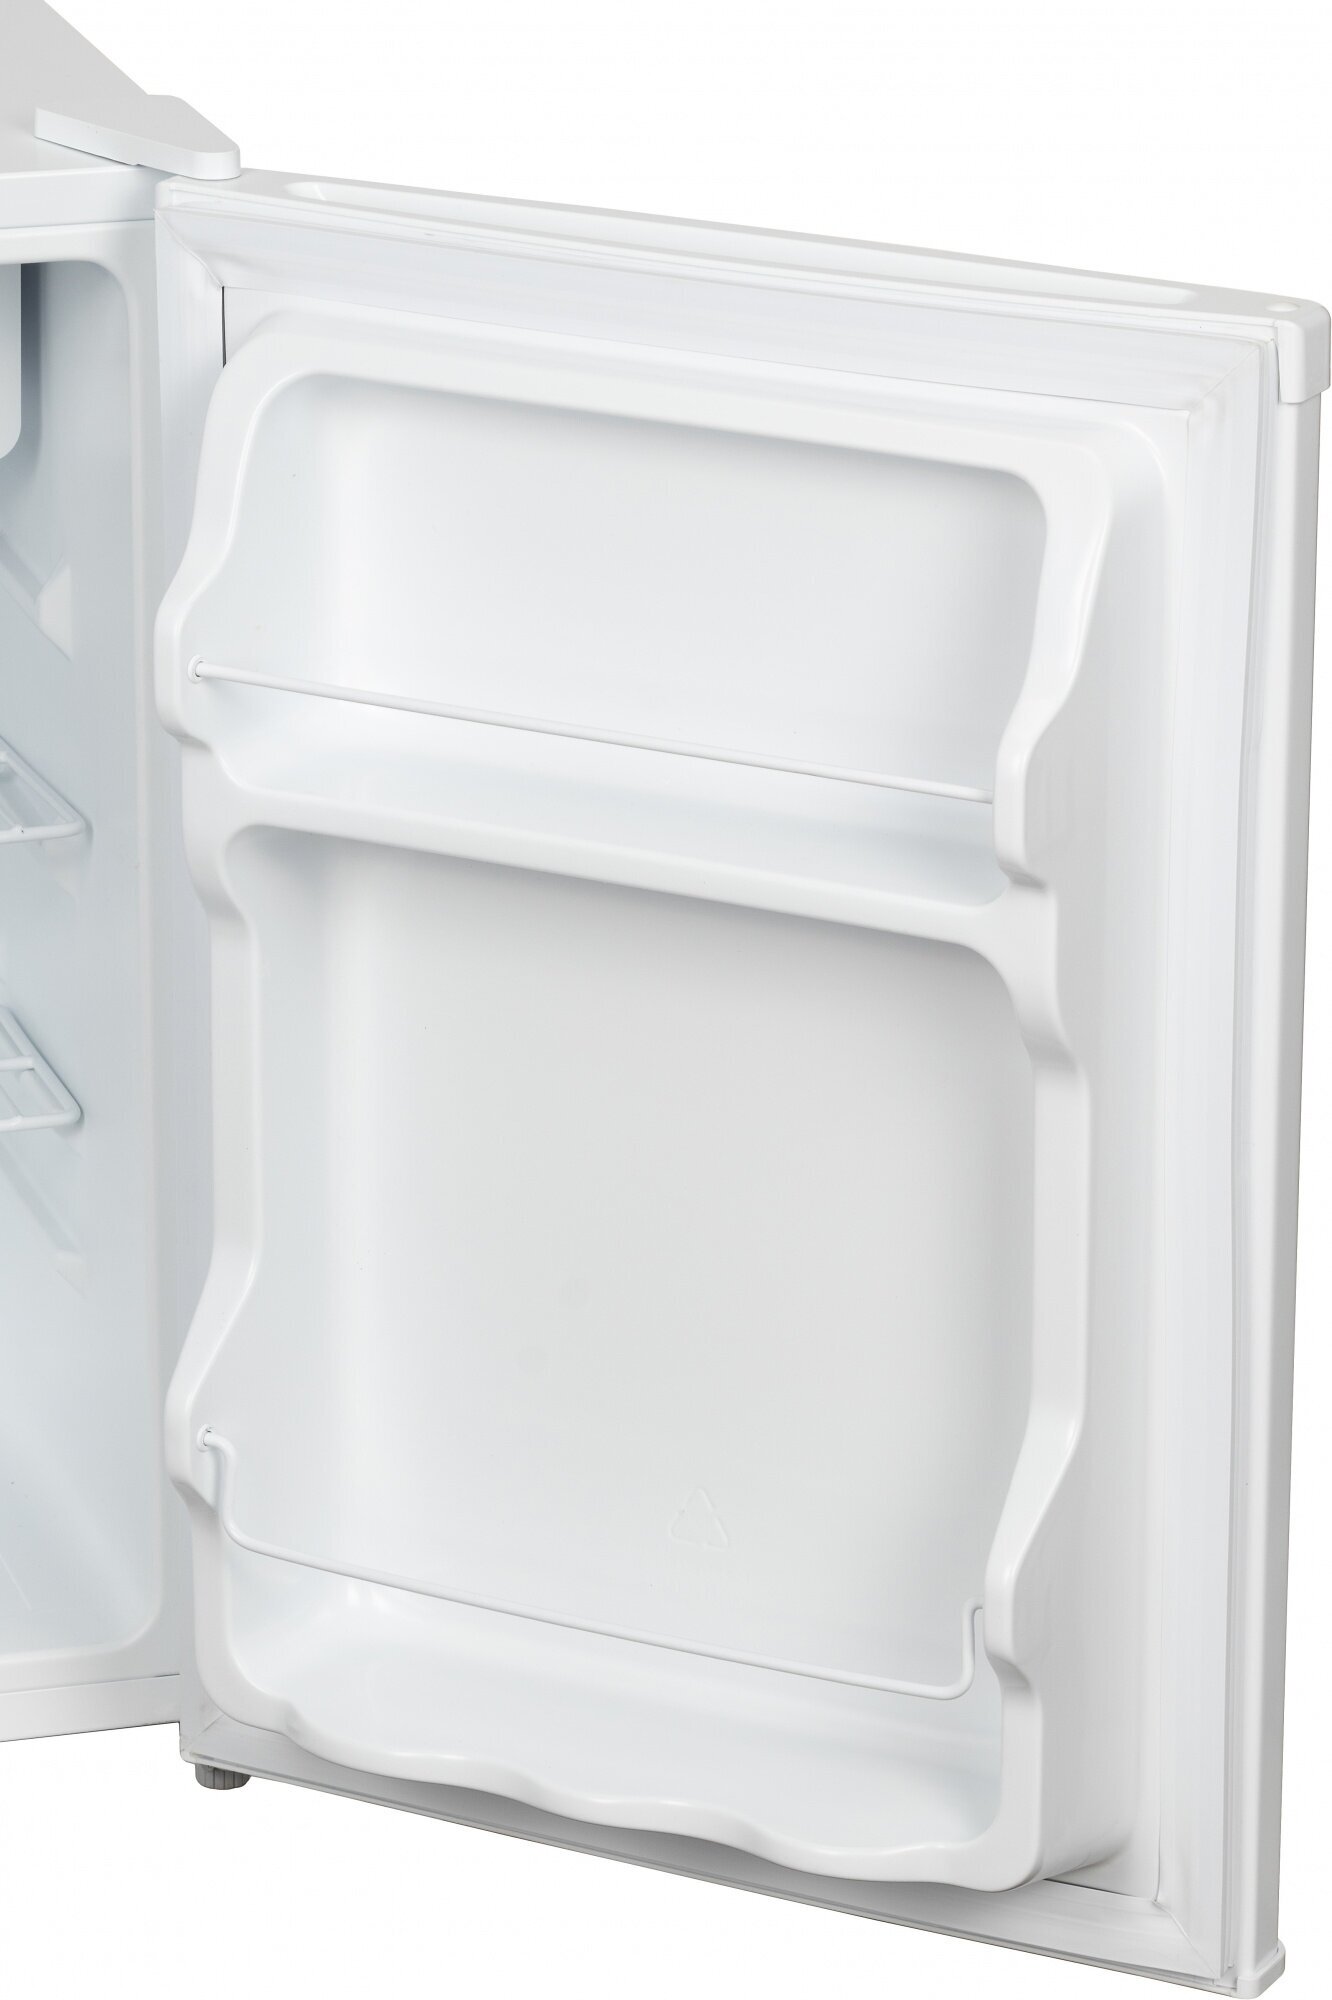 Холодильник HYUNDAI CO1002